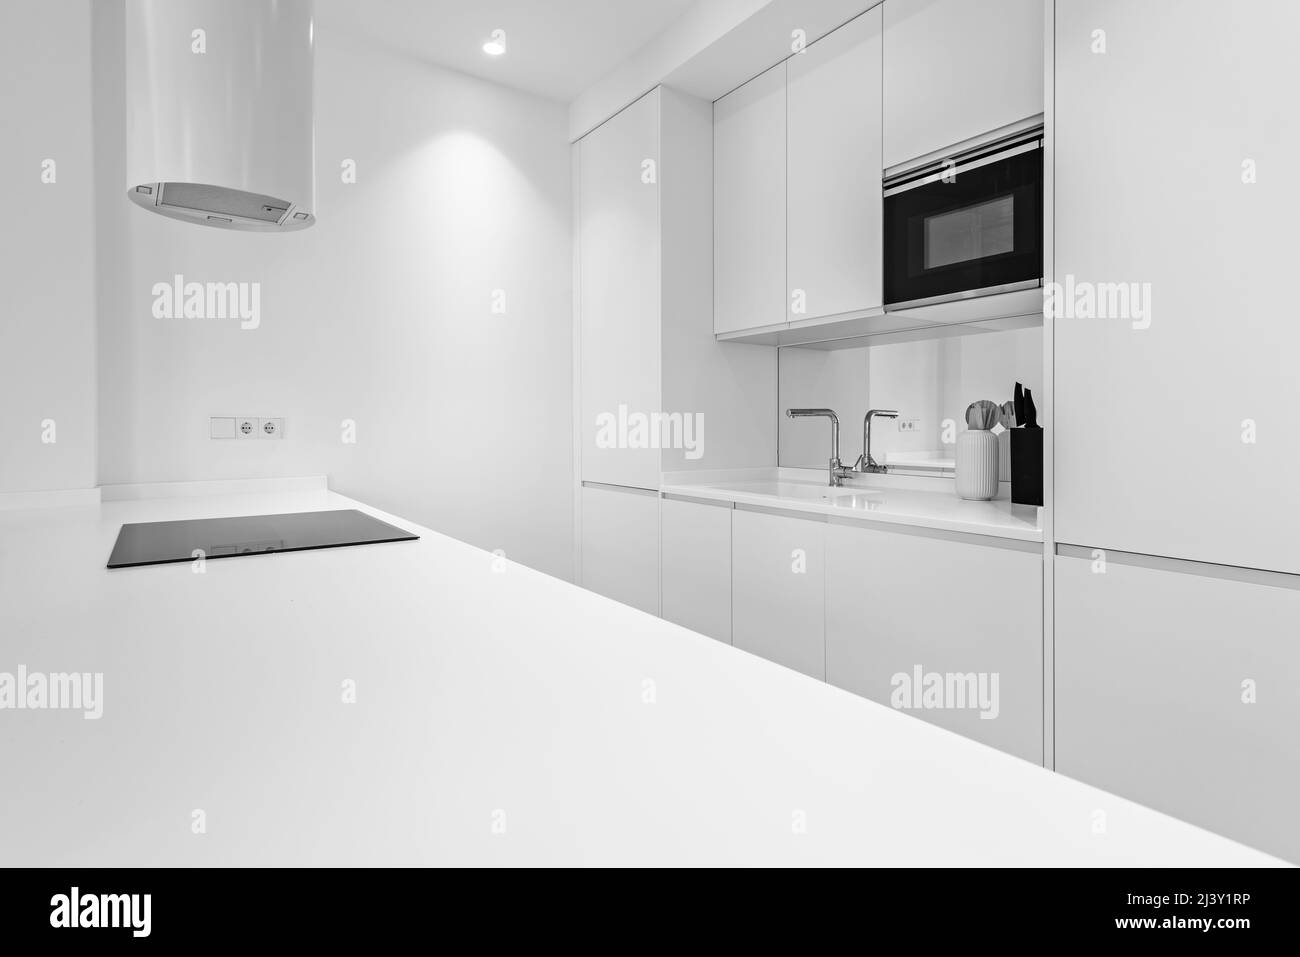 Designer-Küche mit glatten weißen Linien, integrierten Geräten und weiß lackierten Möbeln Stockfoto